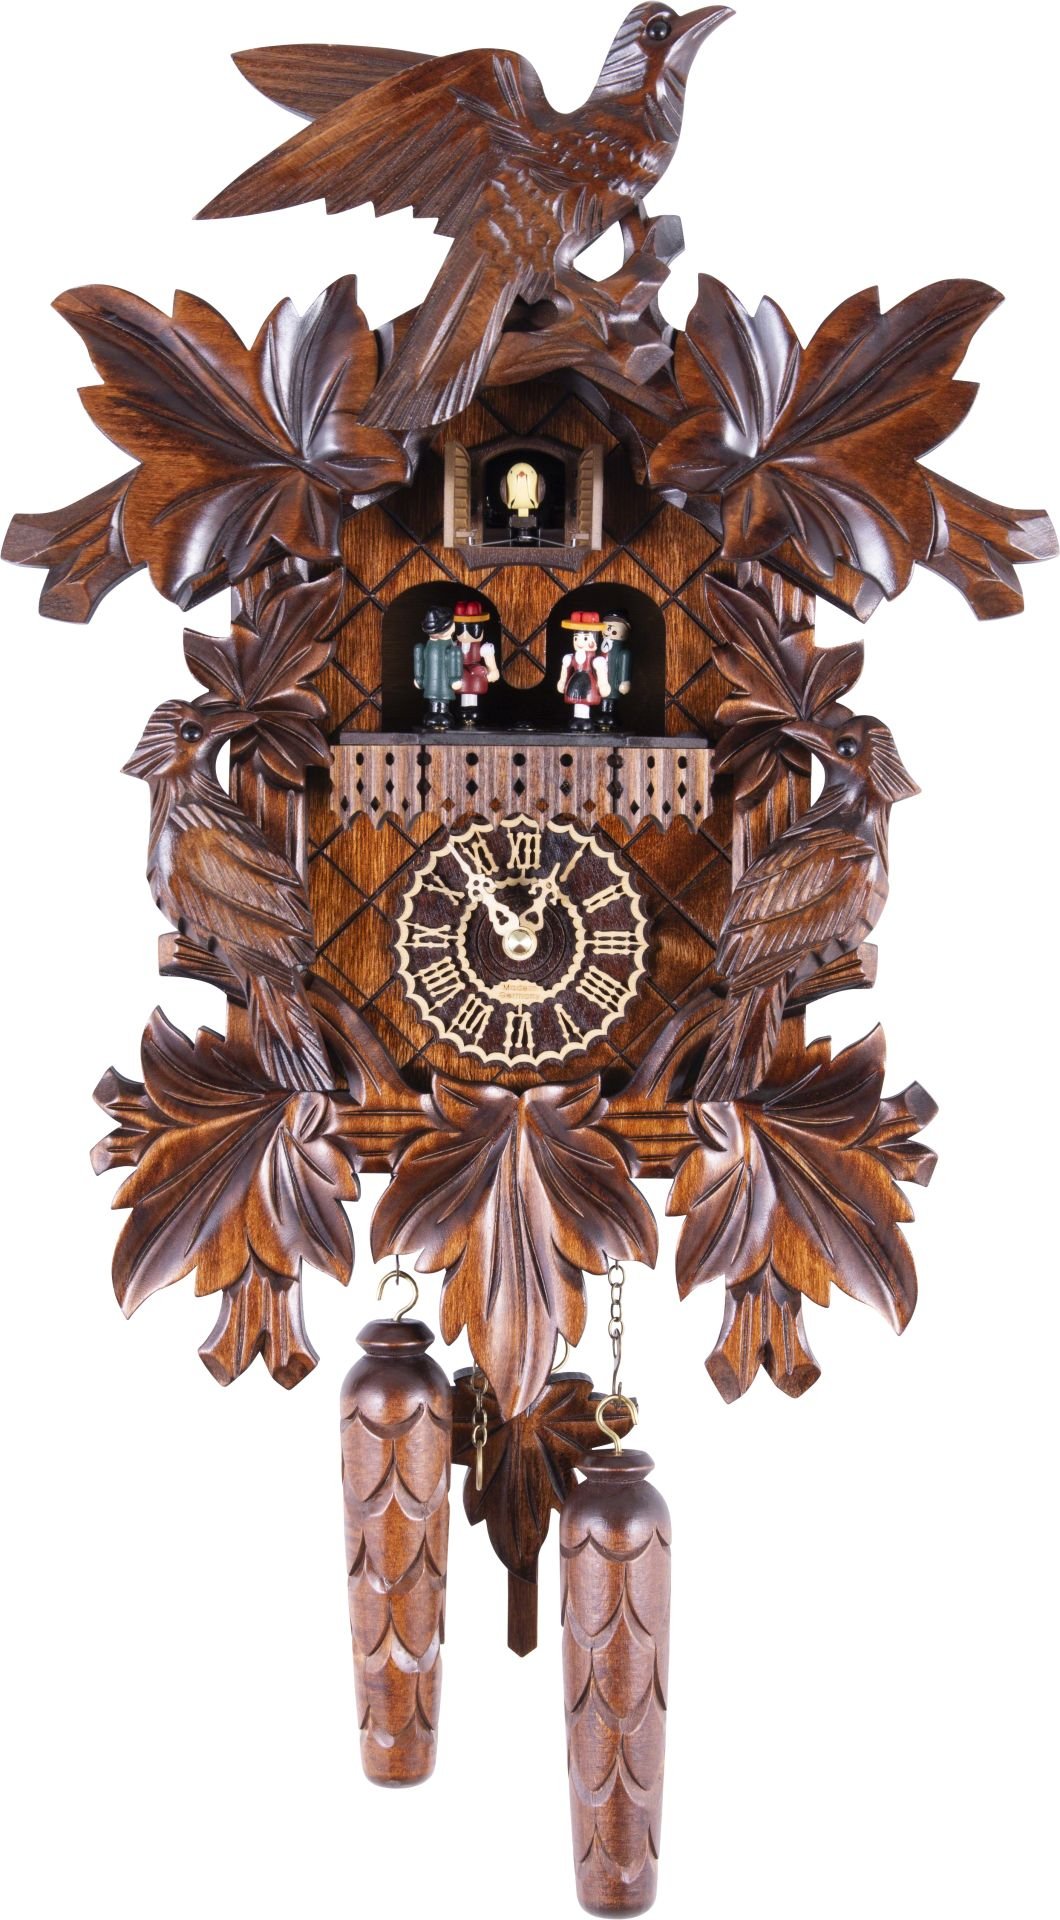 Kuckucksuhr geschnitzt Quarz-Uhrwerk 42cm von Trenkle Uhren